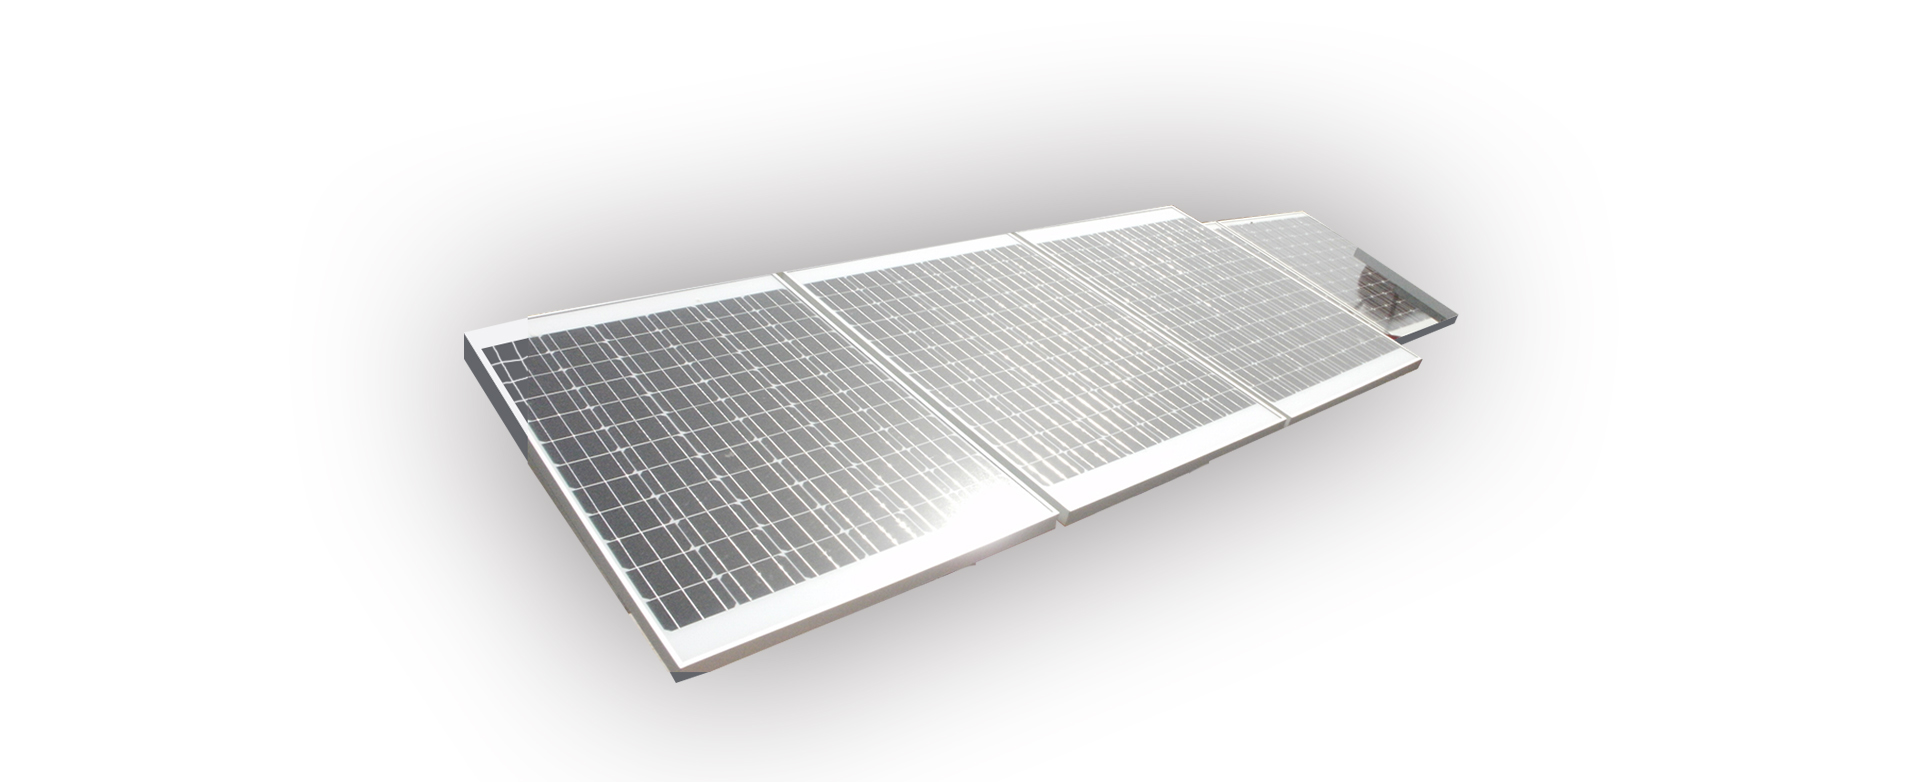 vesat solar panels